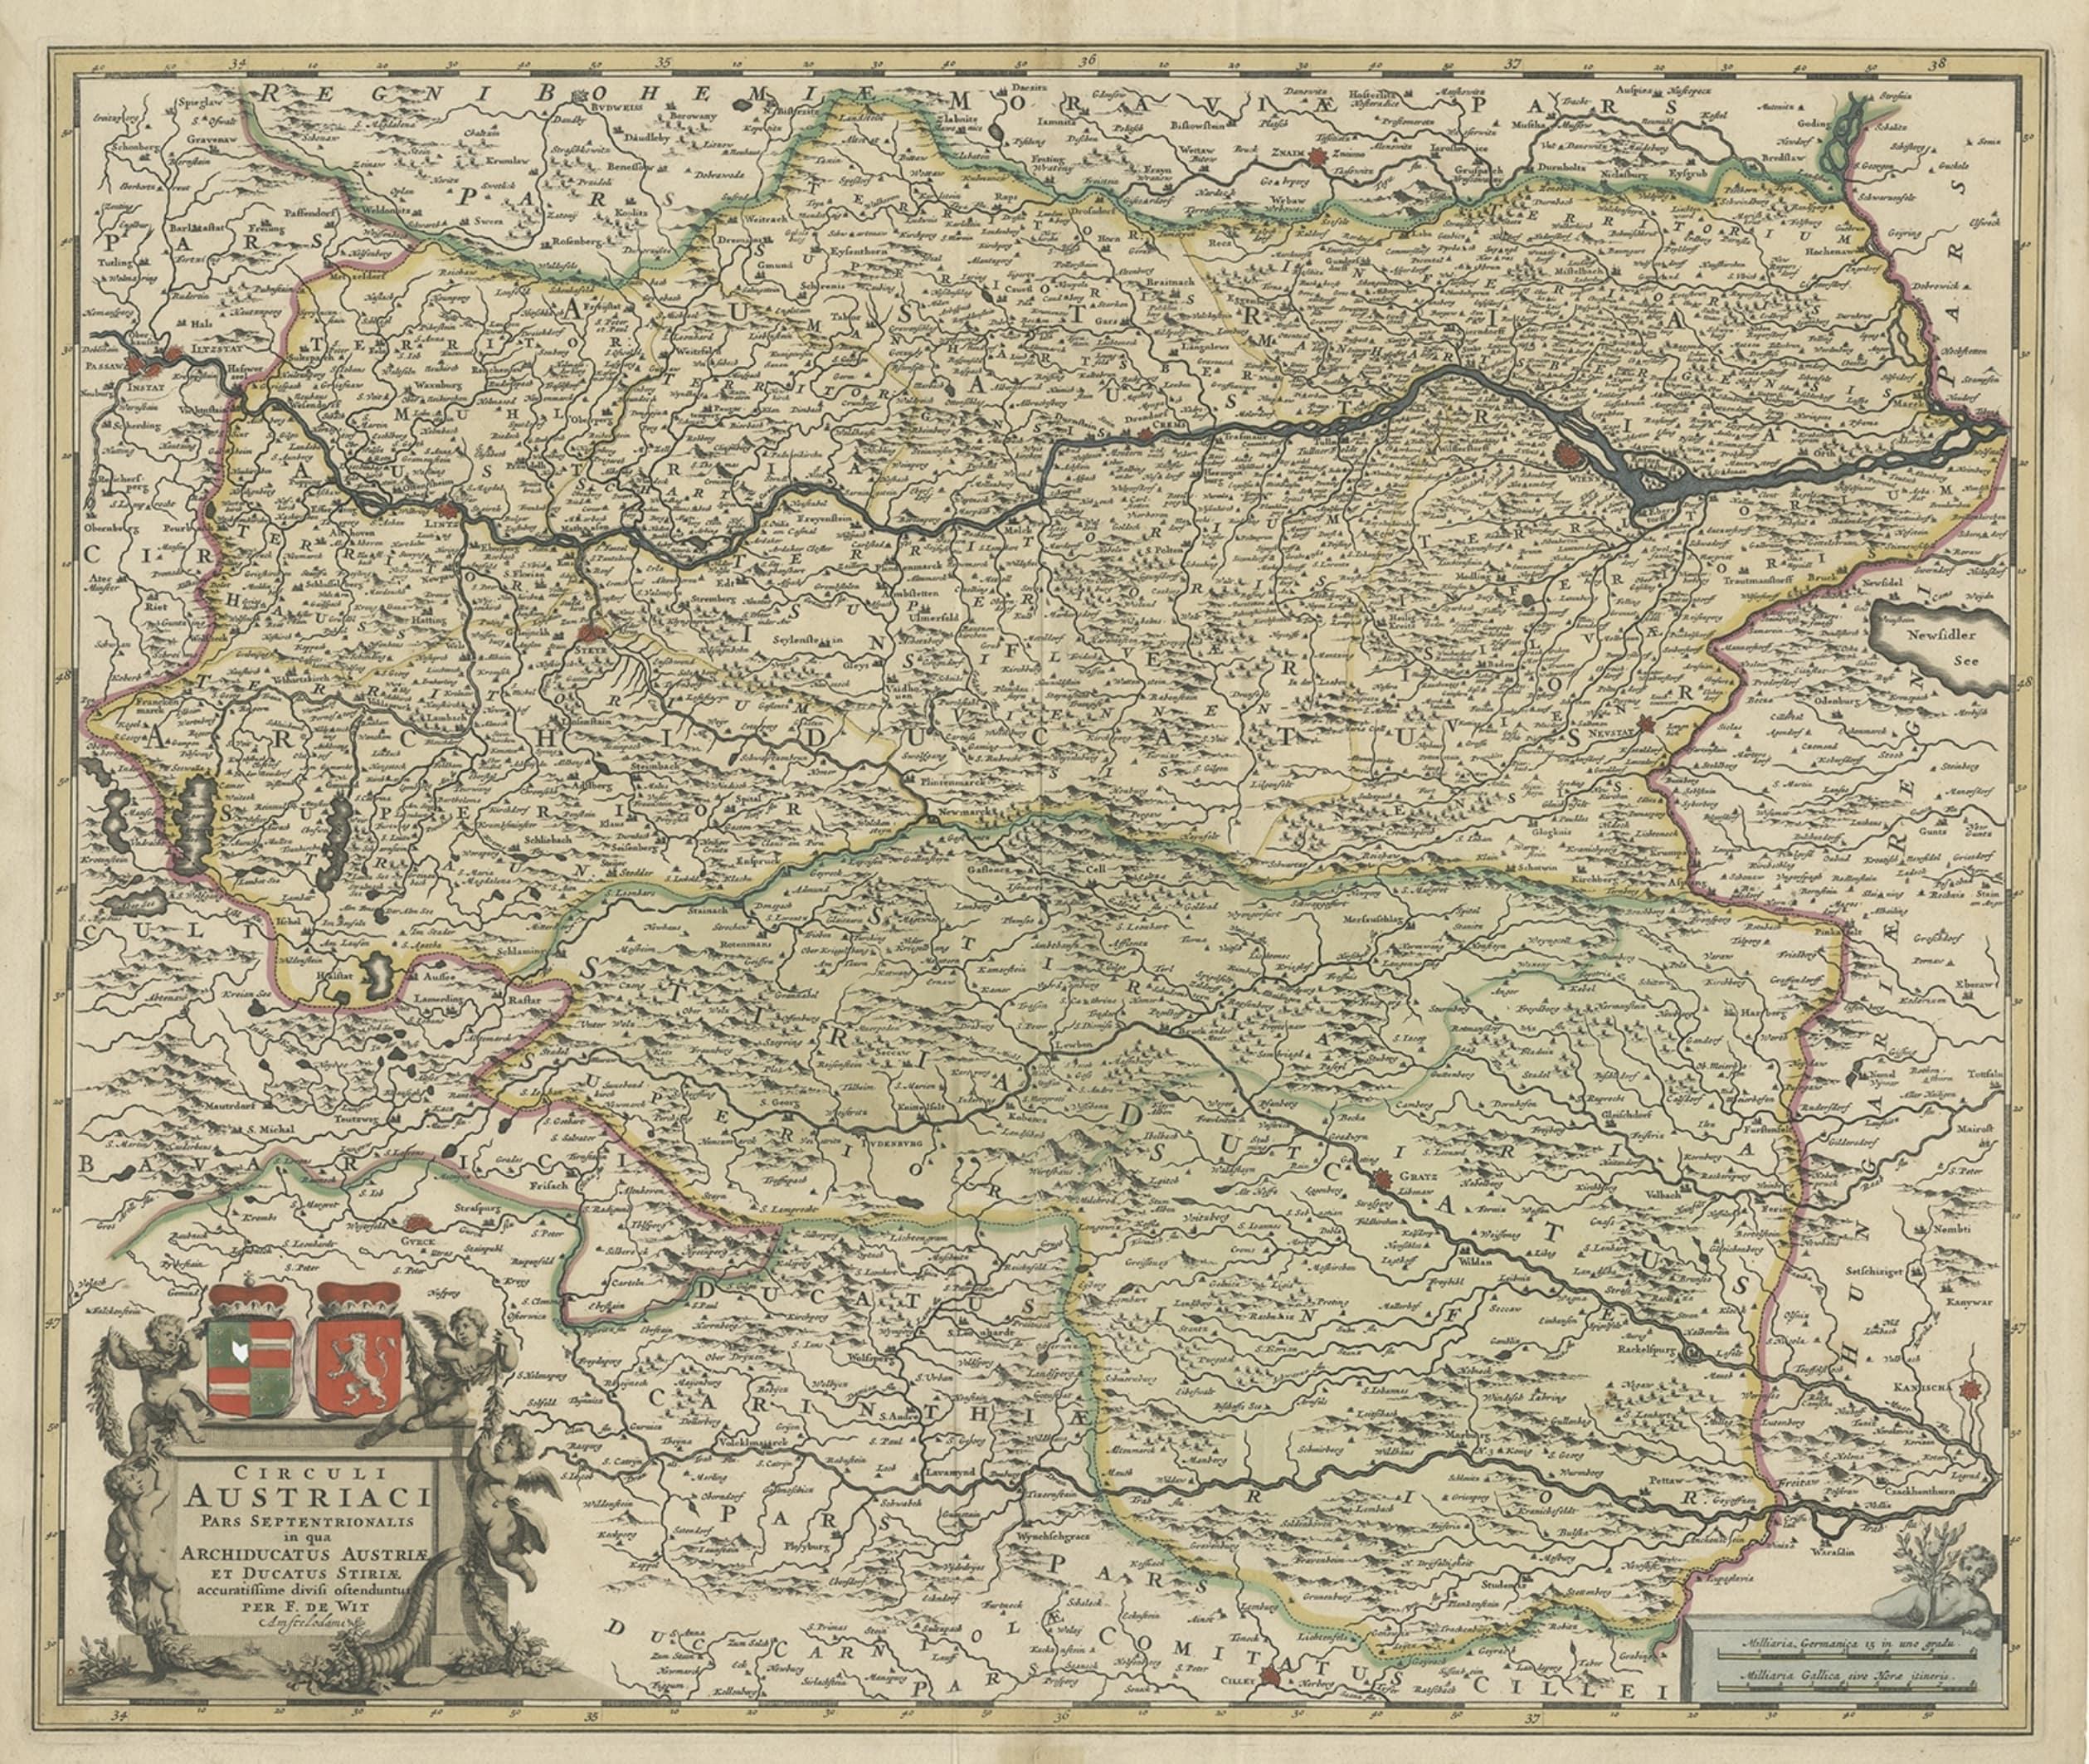 Antique map of Austria titled 'Circuli Austriaci pars septentrionalis in quia archiducatus Austriae et Ducatus Stiriae accuratissime divisi ostenduntur per F. de Wit'. 

Detailed map of Austria, centered on the course of the Danube from Passau to